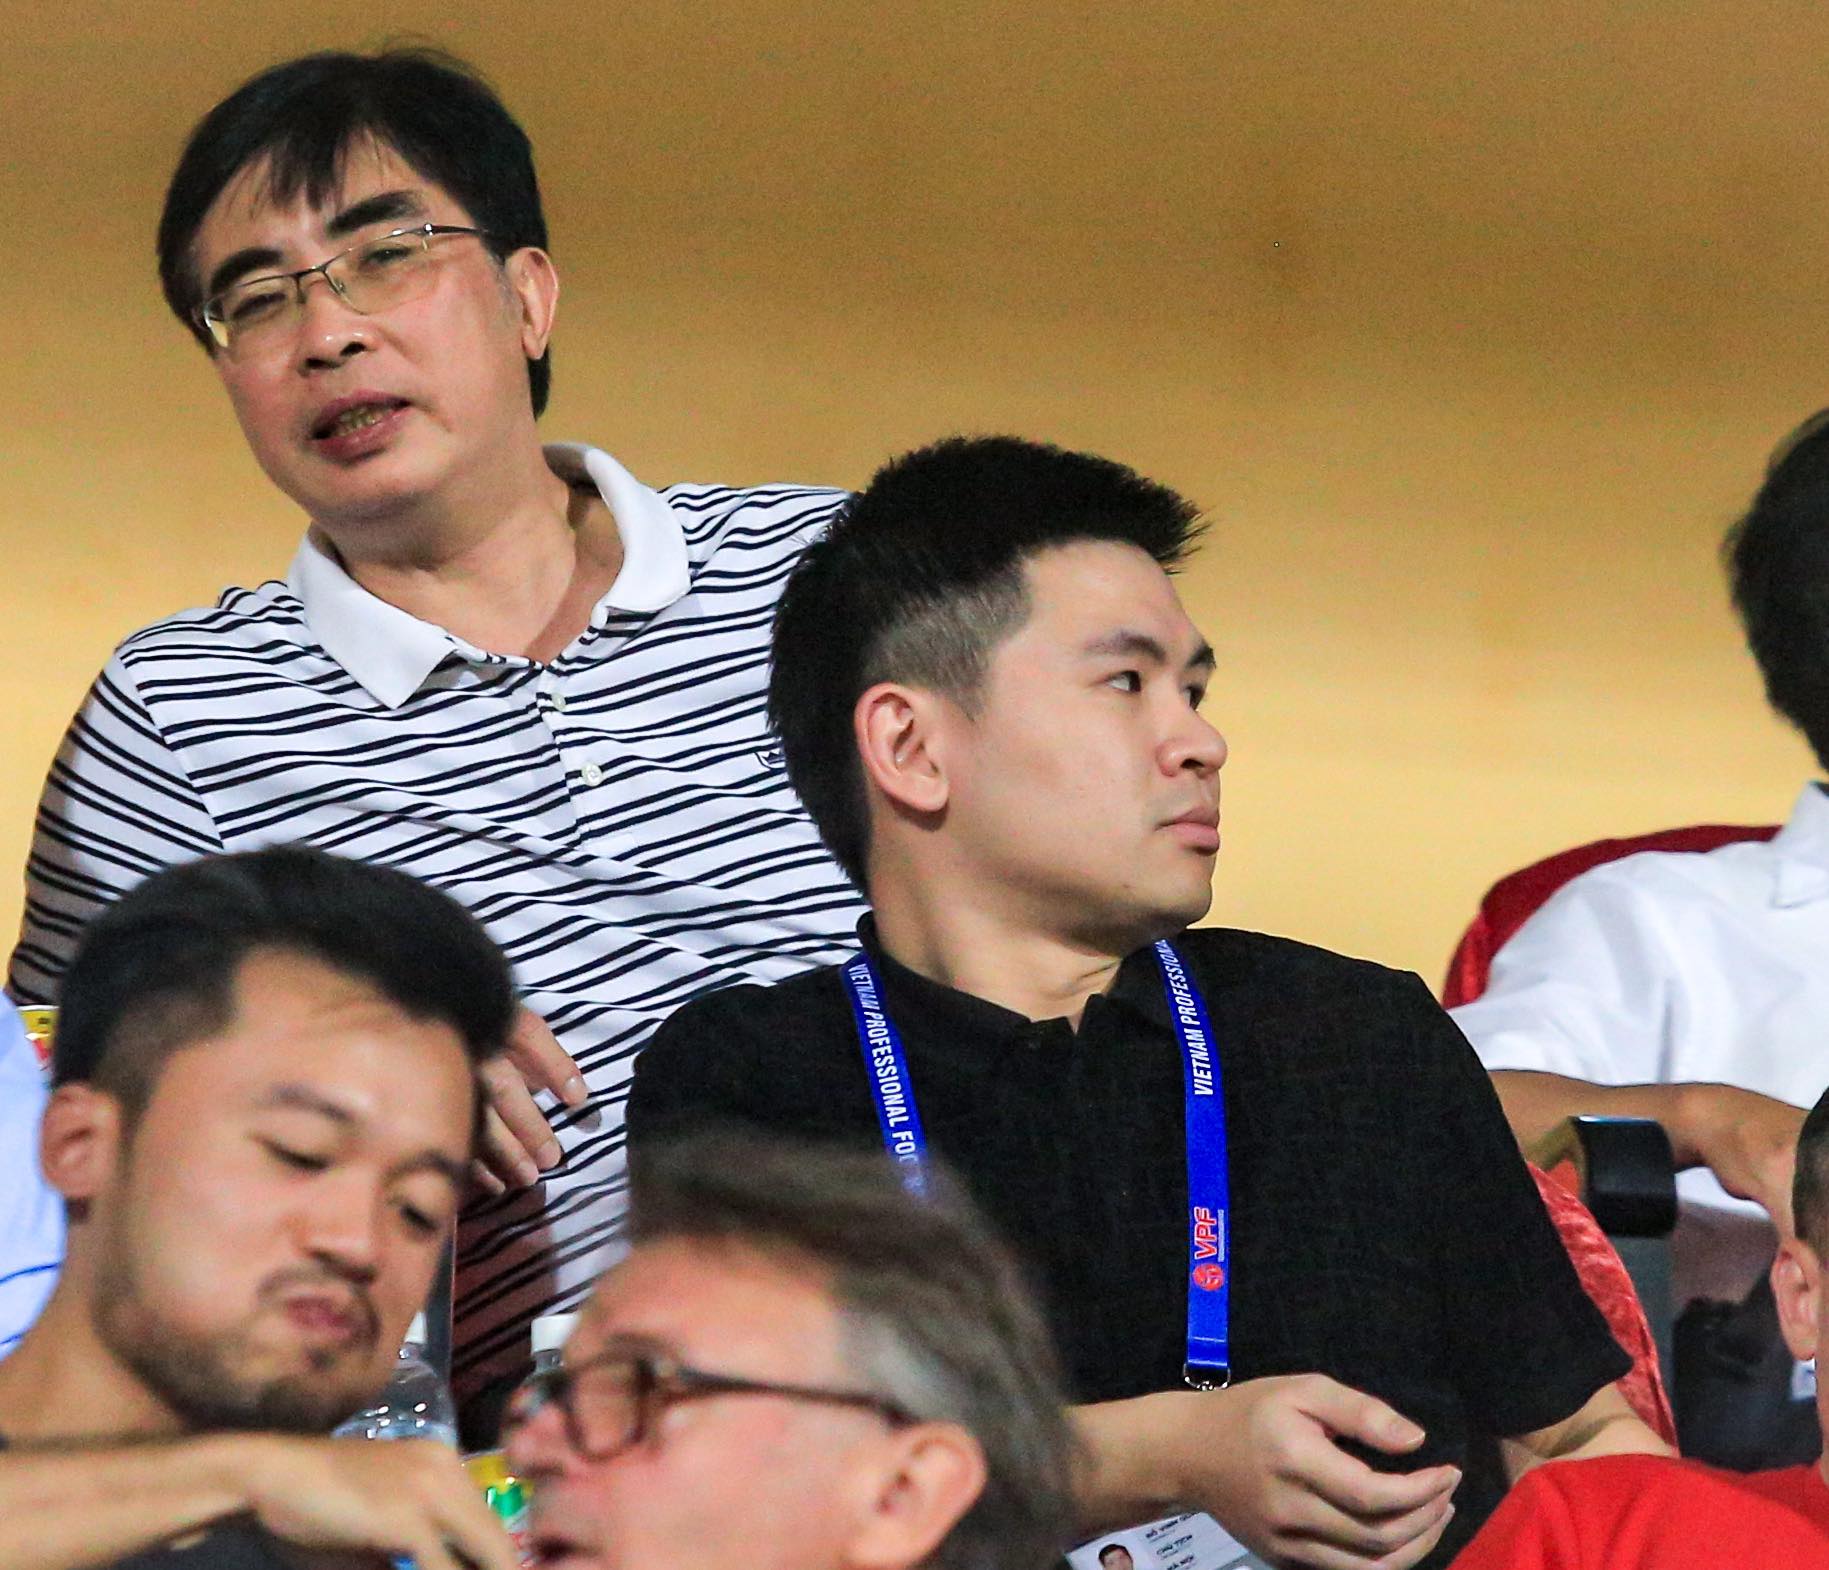 Chủ tịch CLB Hà Nội đi siêu xe 15 tỷ đến SVĐ, cùng bố hoa hậu Đỗ Mỹ Linh ngồi xem bóng đá